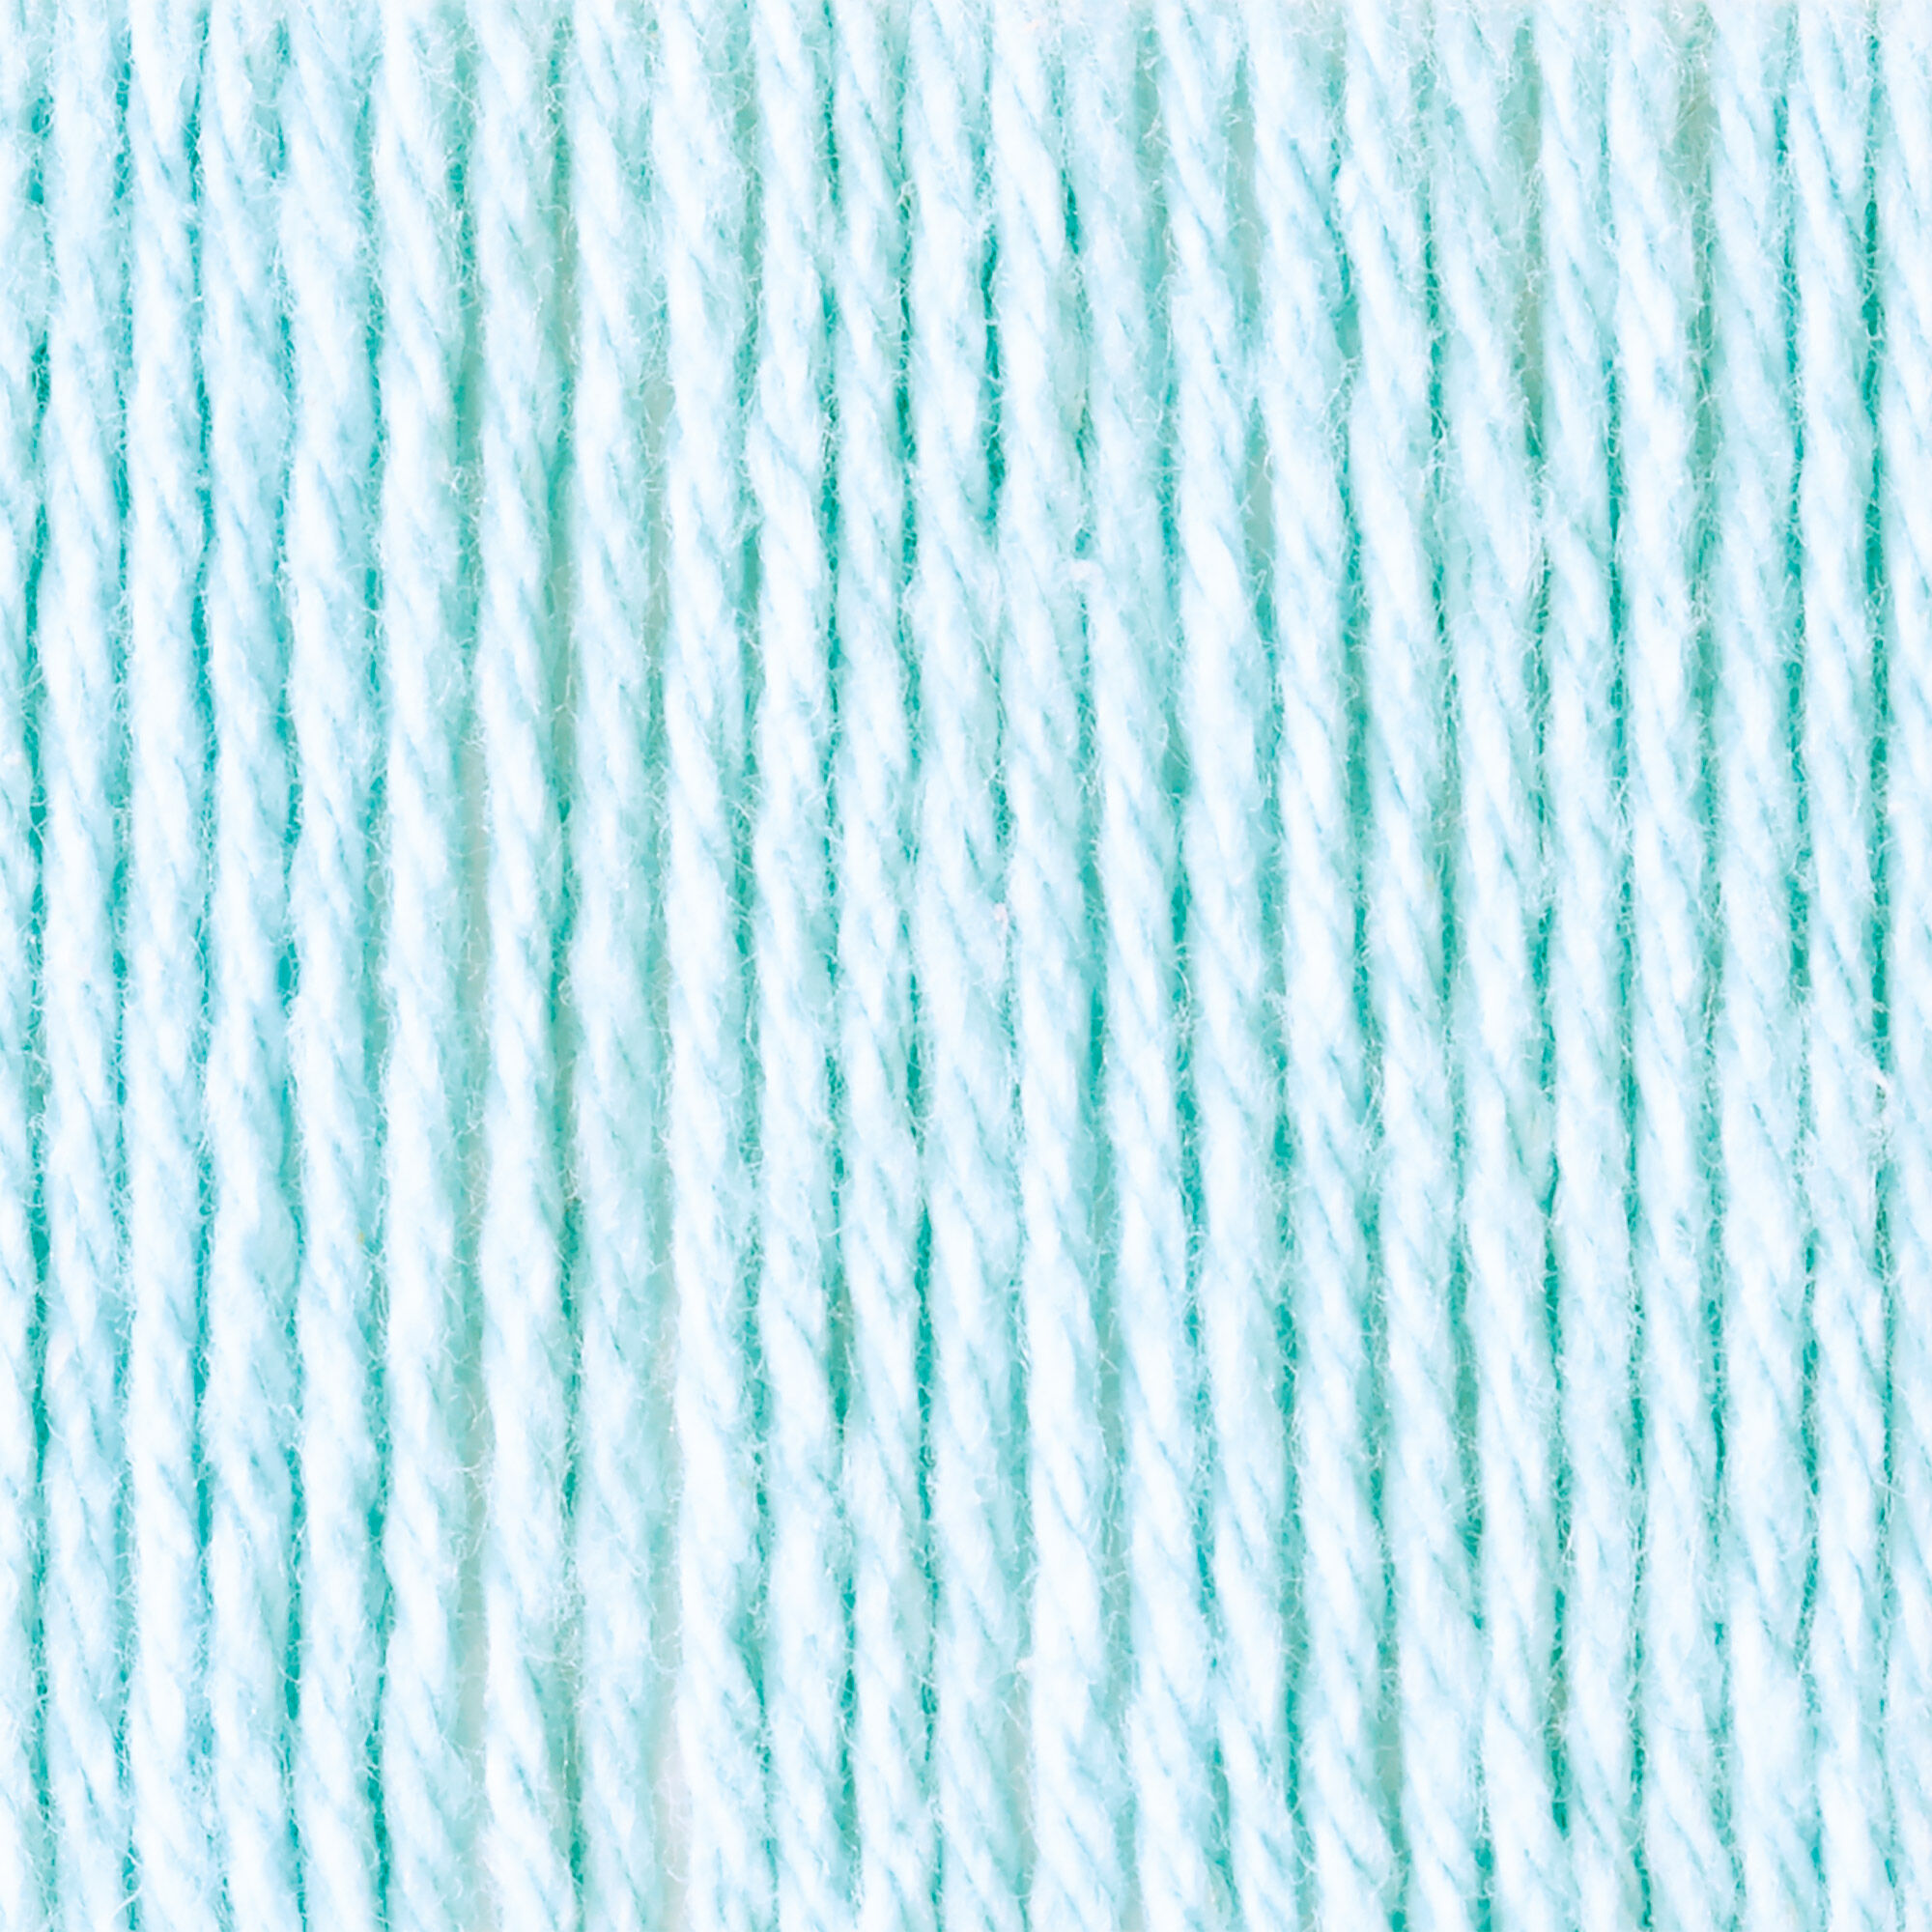 Lily Knit Waffle Dishcloth Pattern